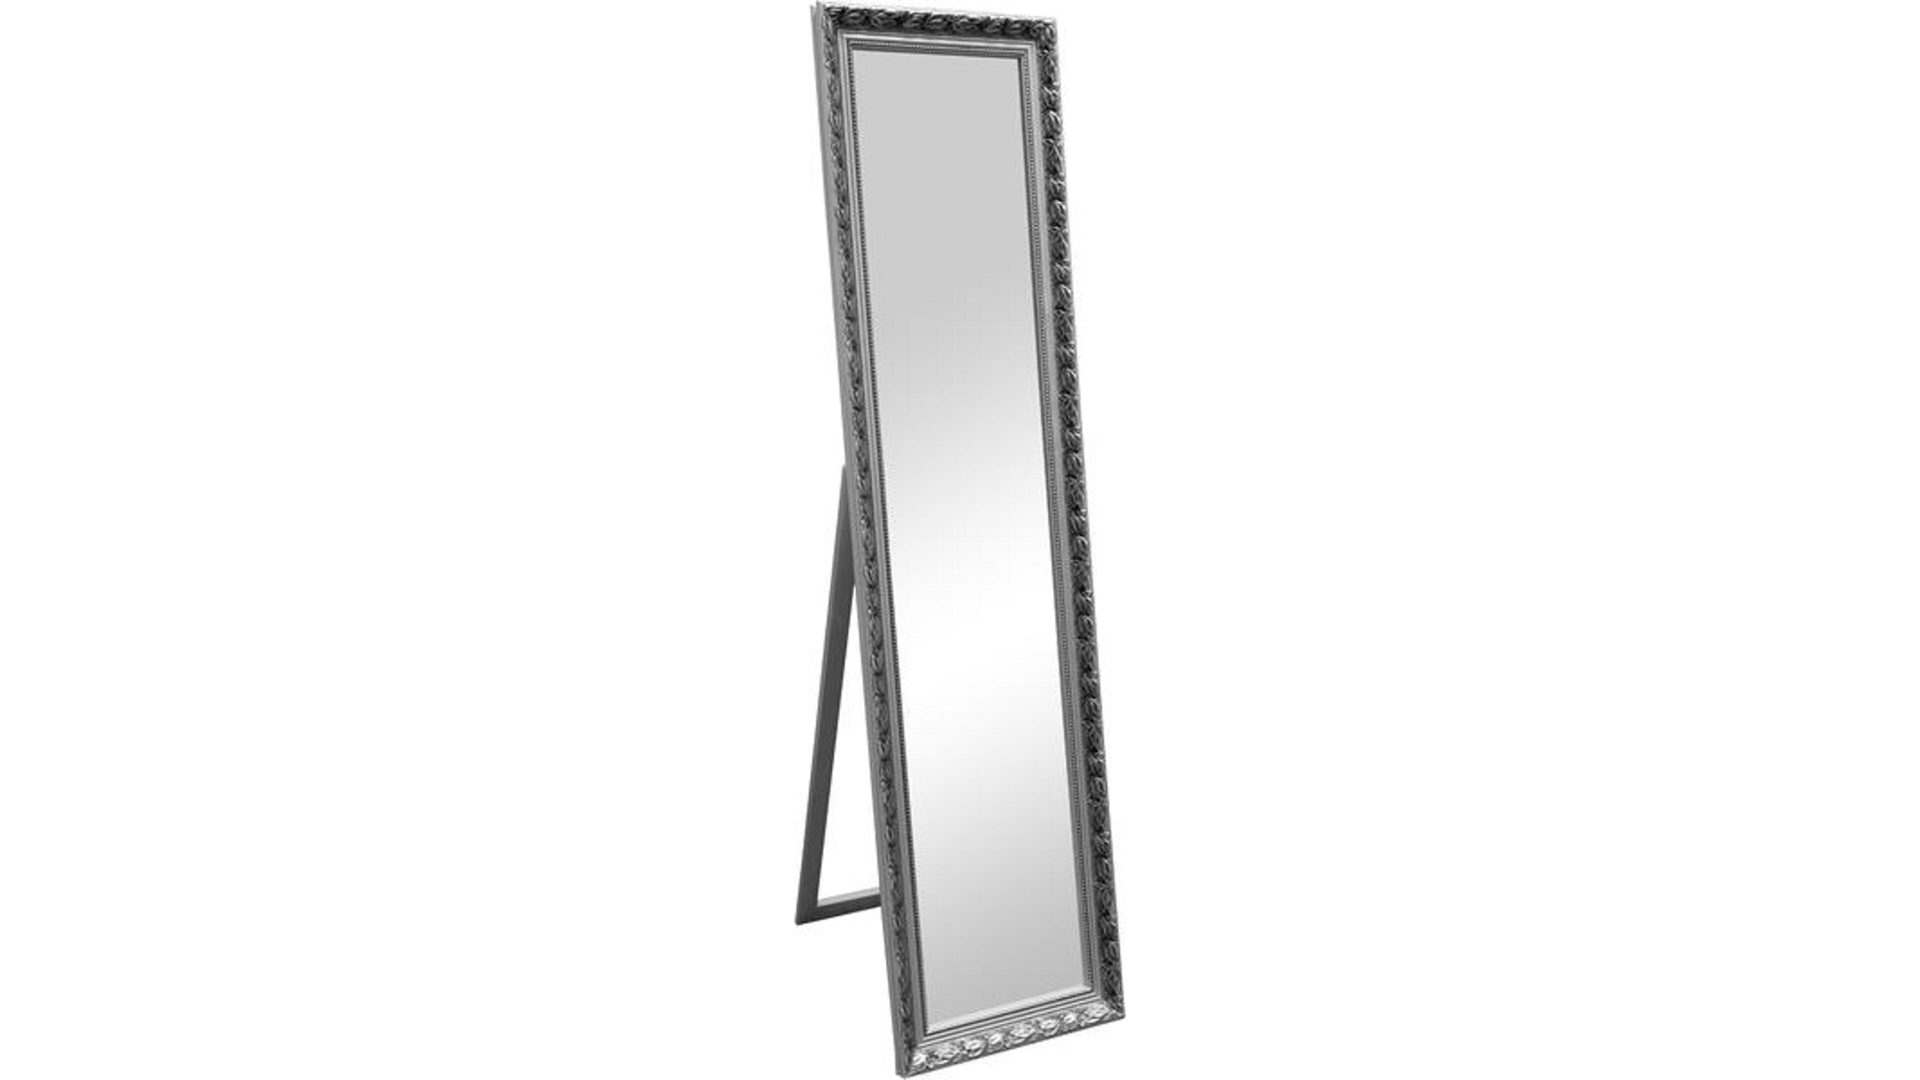 Standspiegel Spiegelprofi aus Spiegel in Metallfarben Rahmen-Standspiegel silberfarbener Holzrahmen – ca. 40 x 160 cm